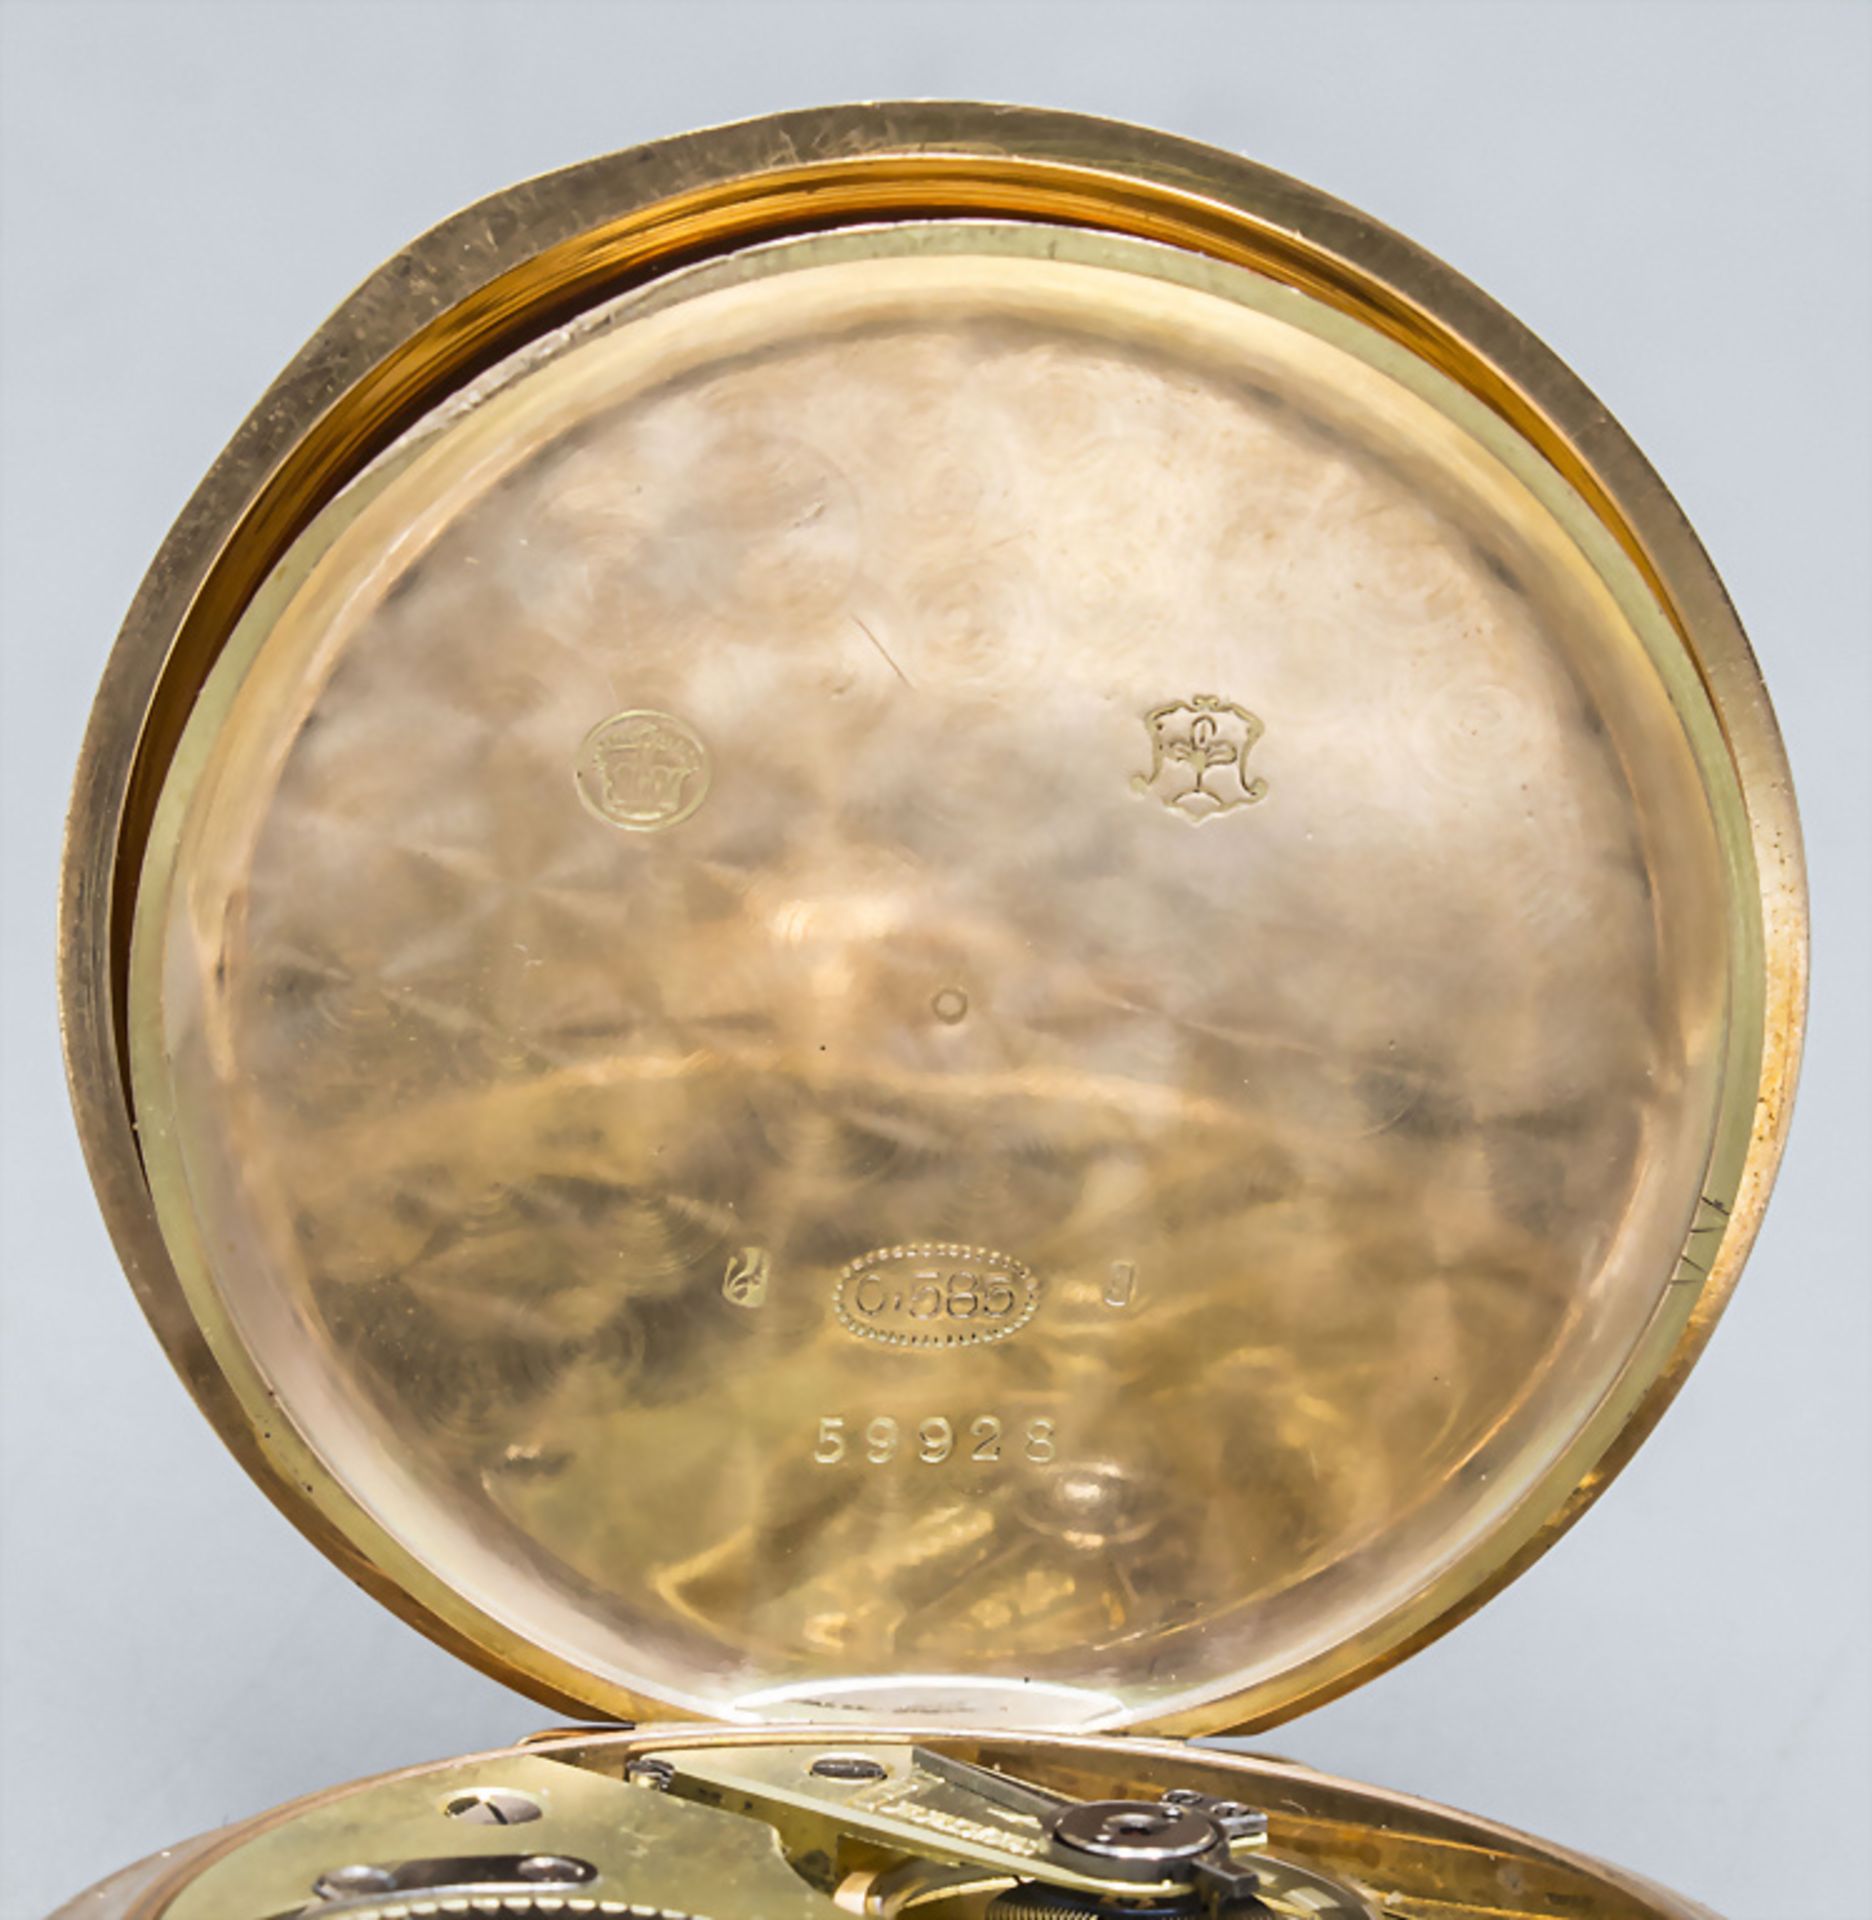 Savonette / Taschenuhr / A 14 ct gold pocket watch, Schweiz/Swiss, um 1910 - Image 7 of 9